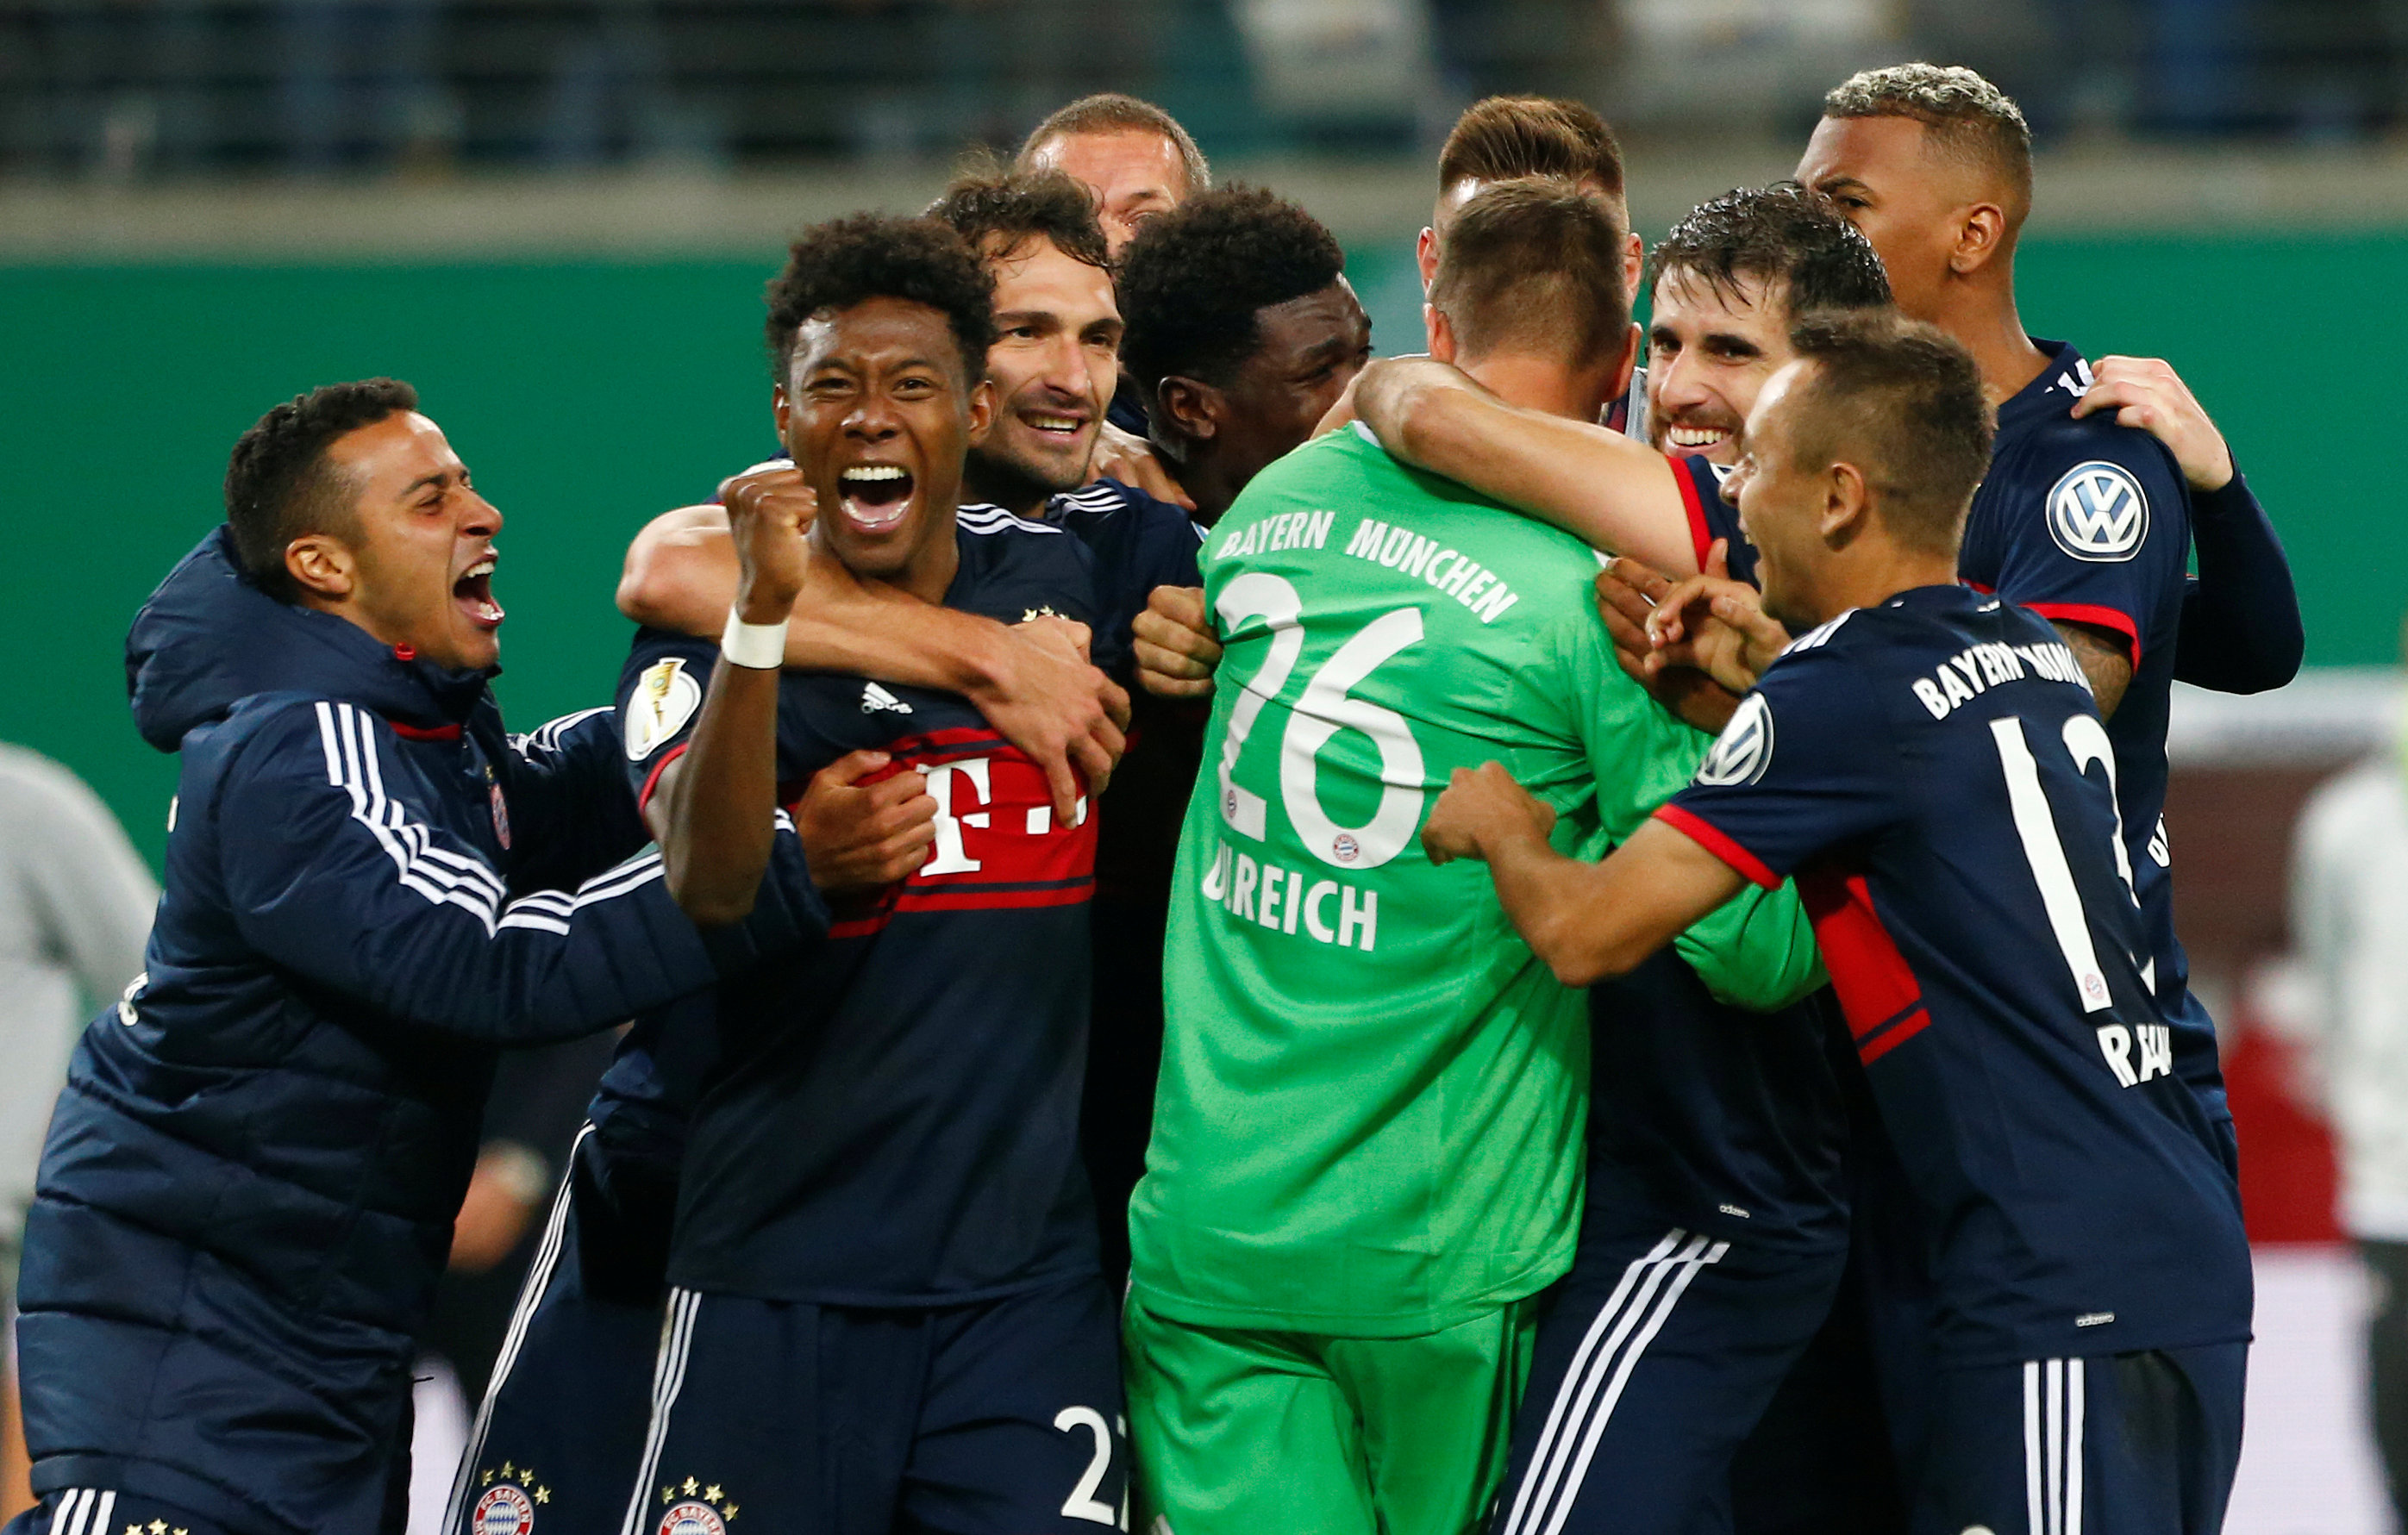 Niềm vui của các cầu thủ B.M sau khi giành vé đi tiếp ở Cúp quốc gia Đức. Ảnh: REUTERS